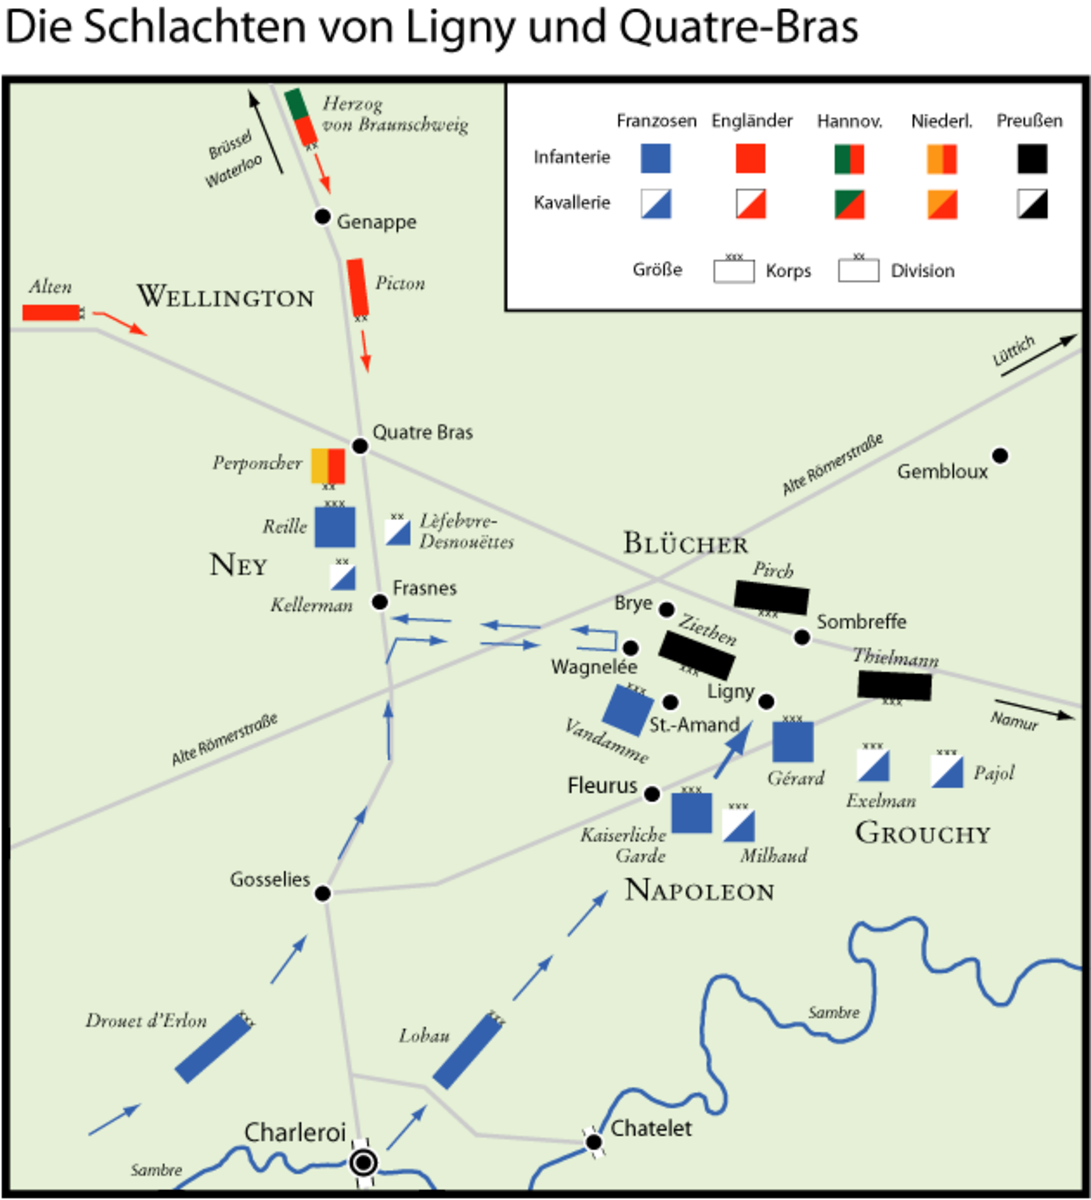 The Battles of Ligny and Quatre Bras